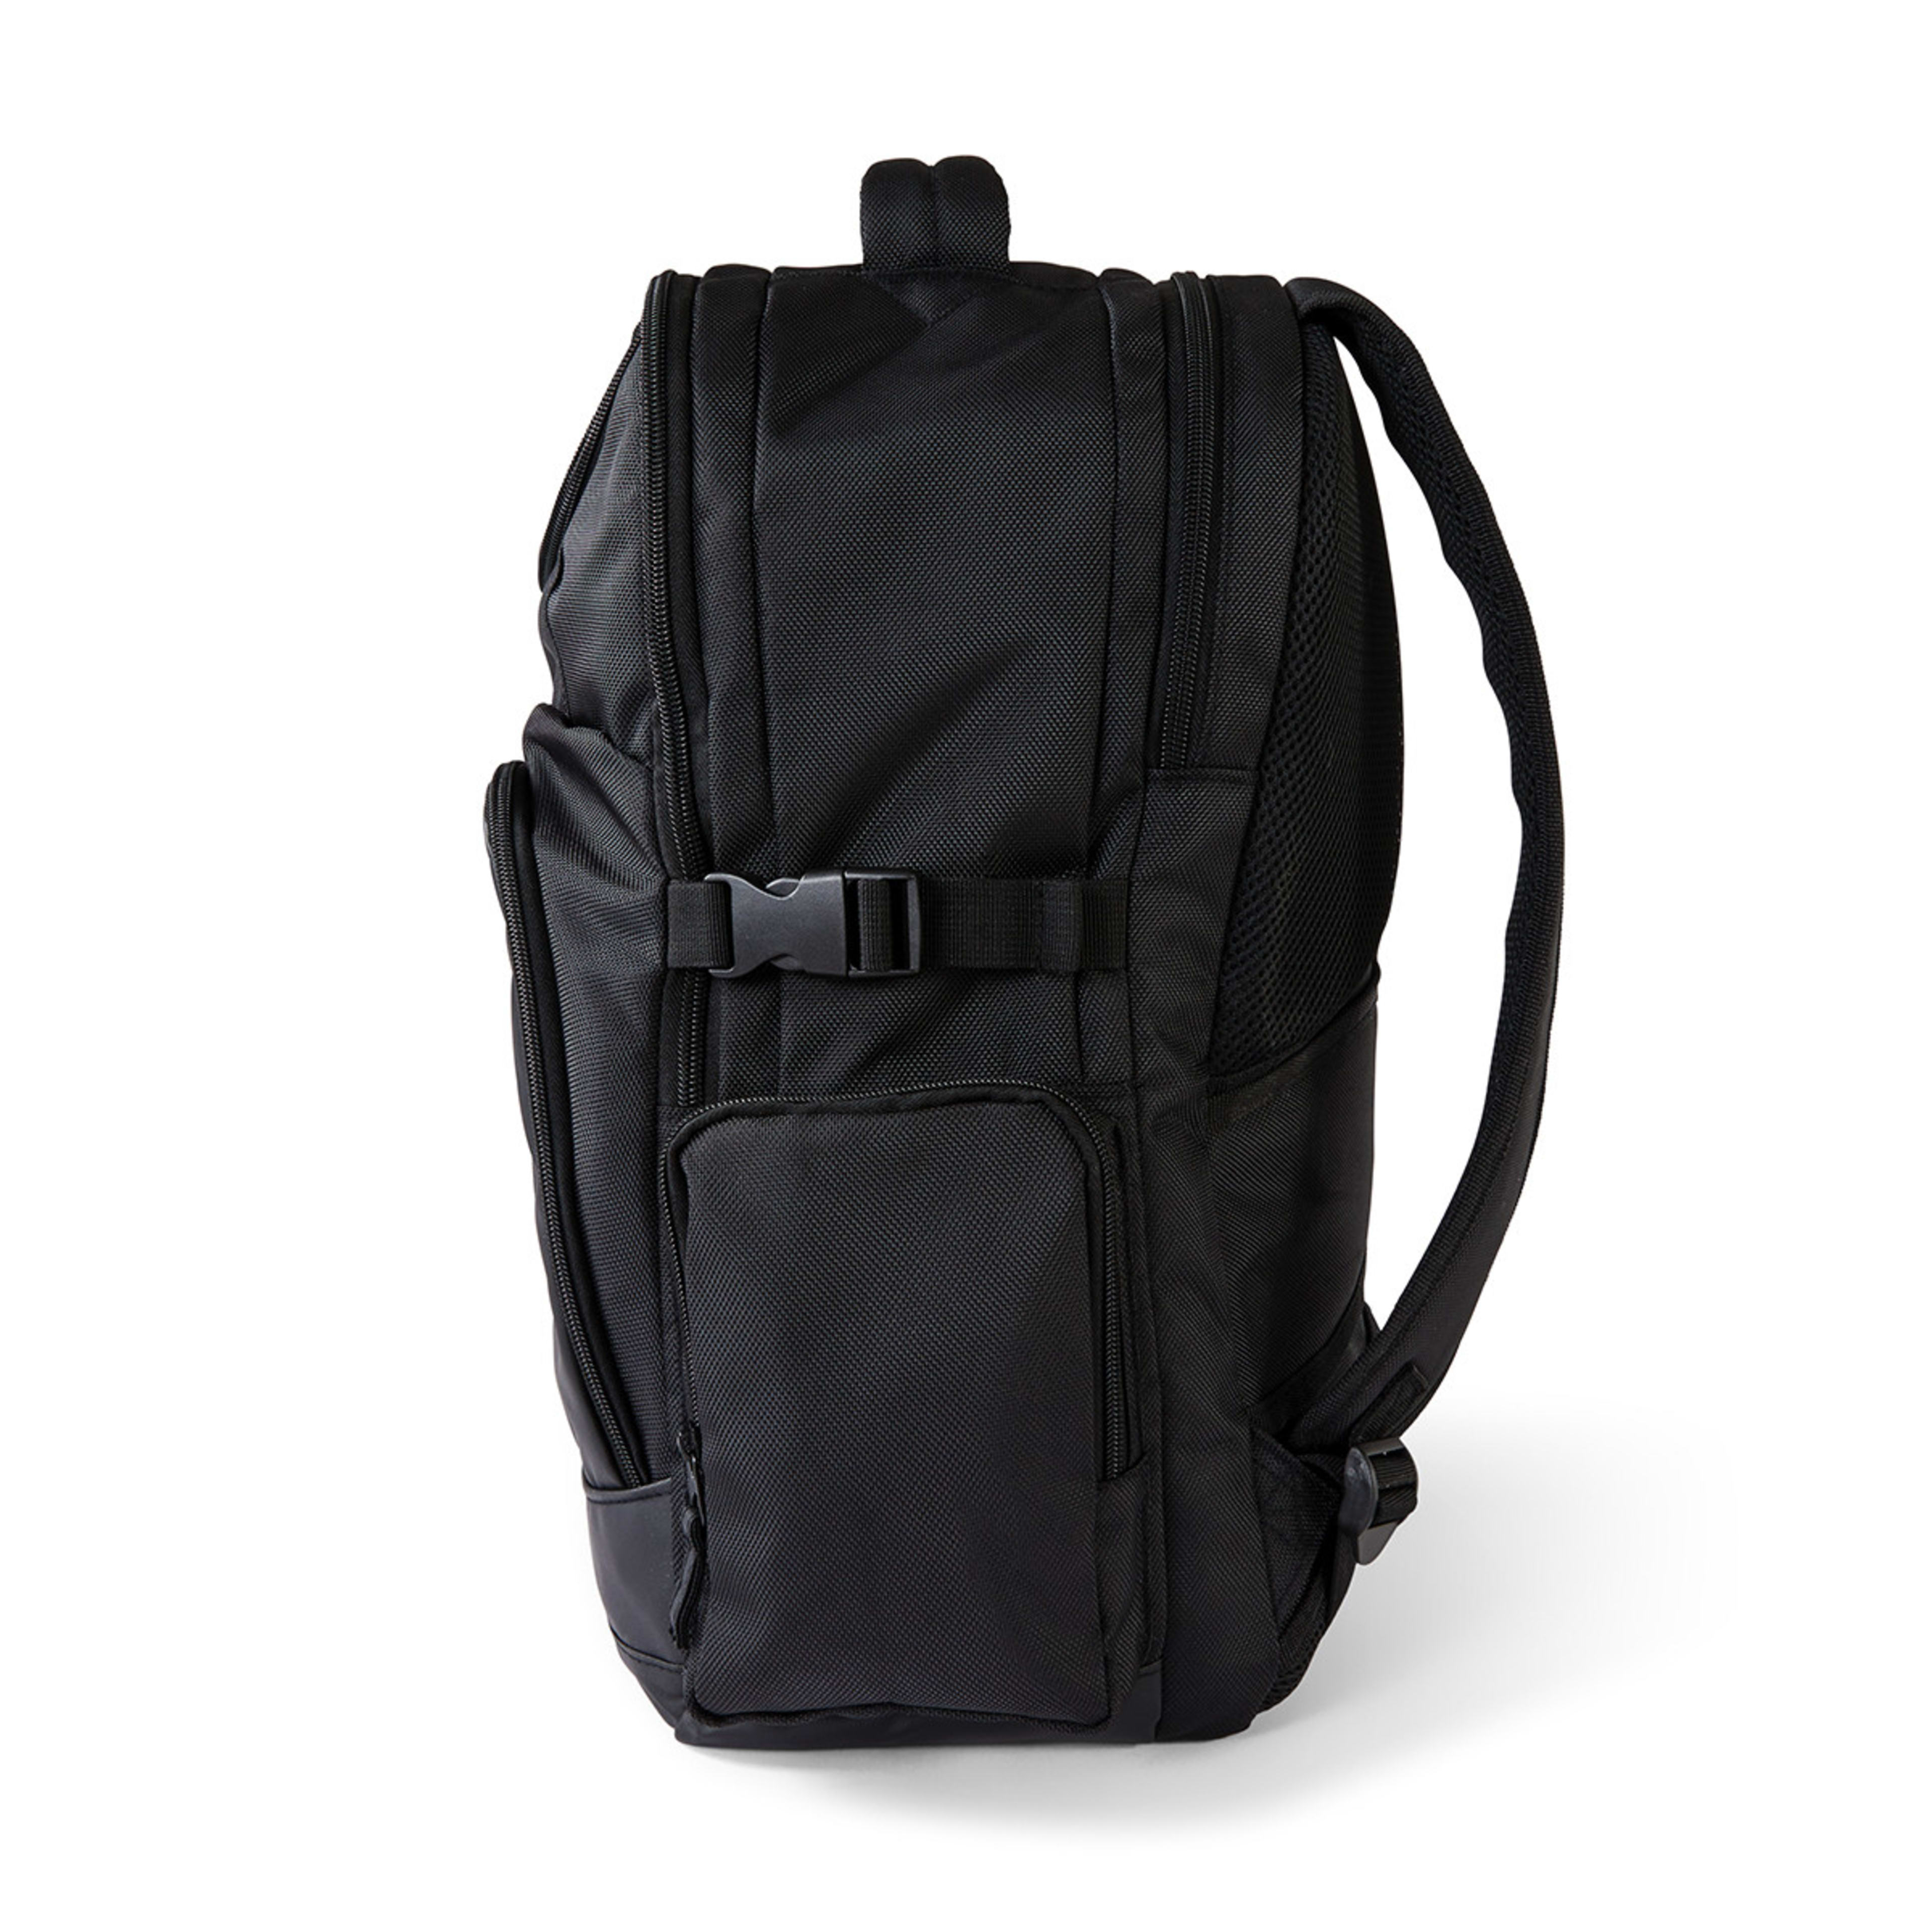 20L Commuter Backpack - Black - Kmart